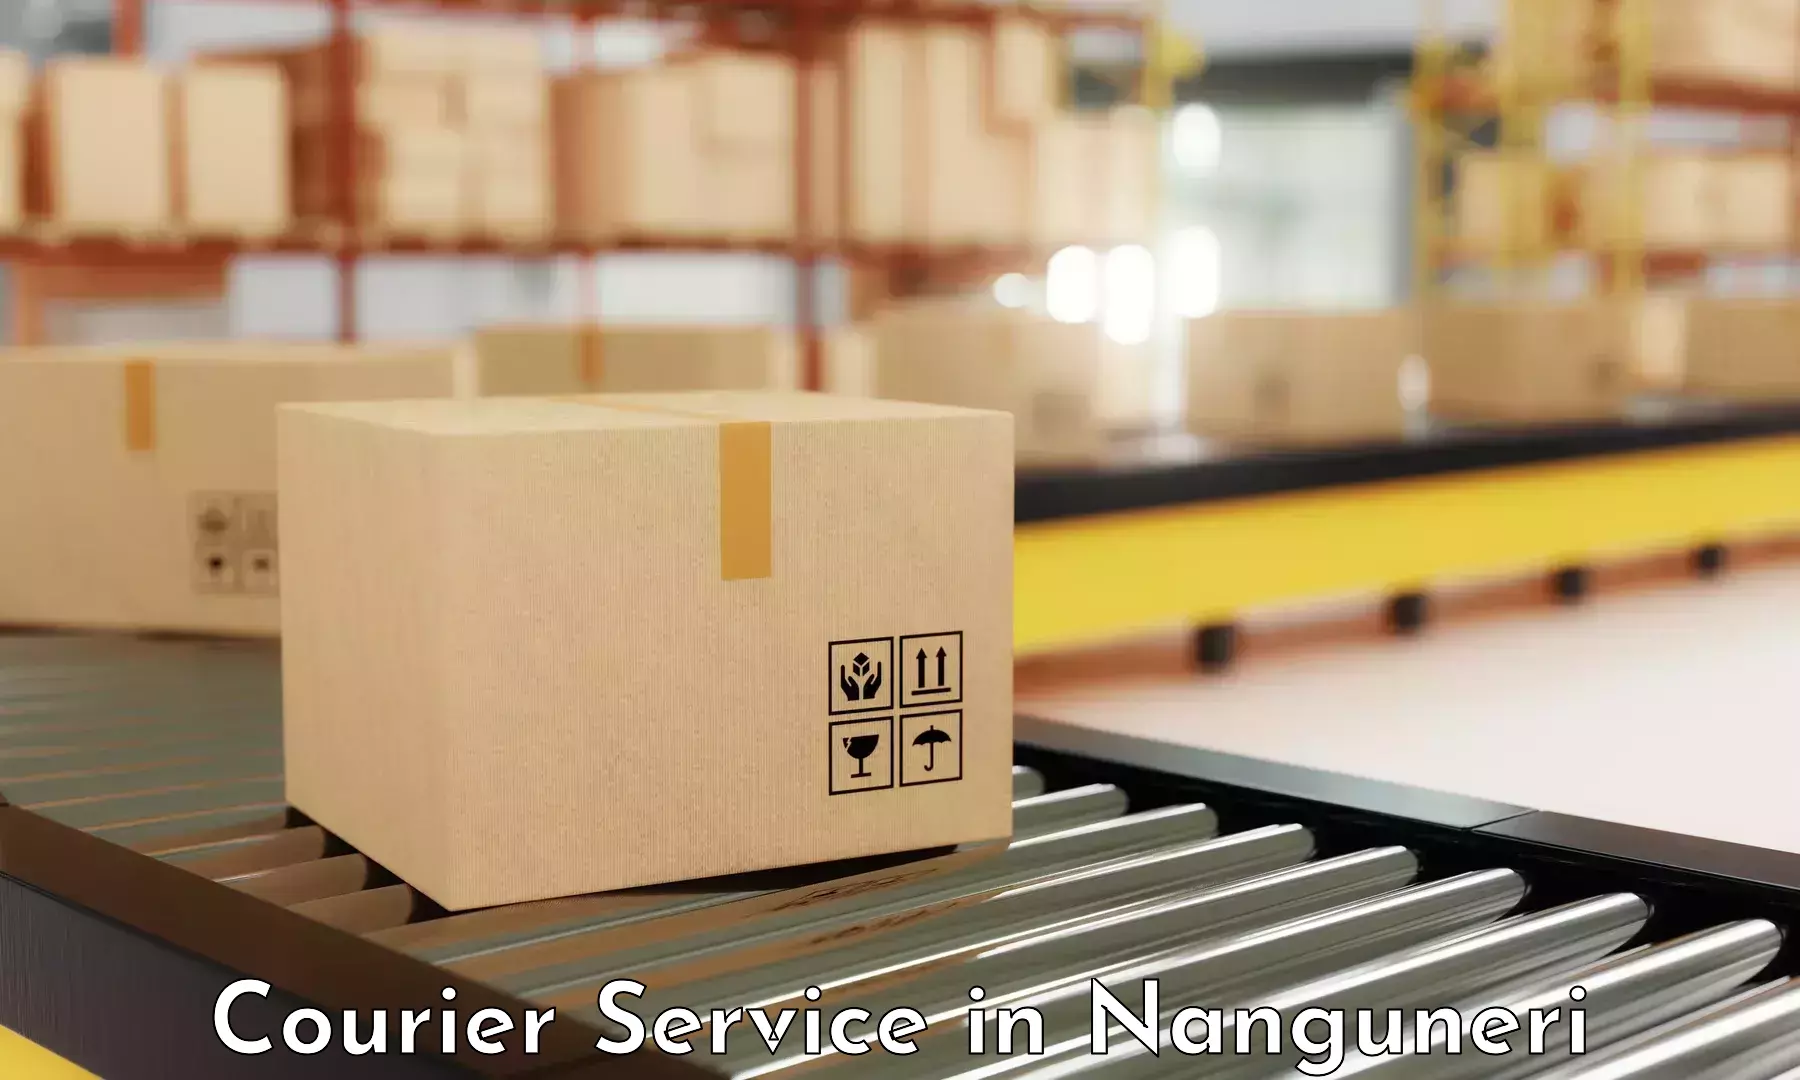 Lightweight parcel options in Nanguneri